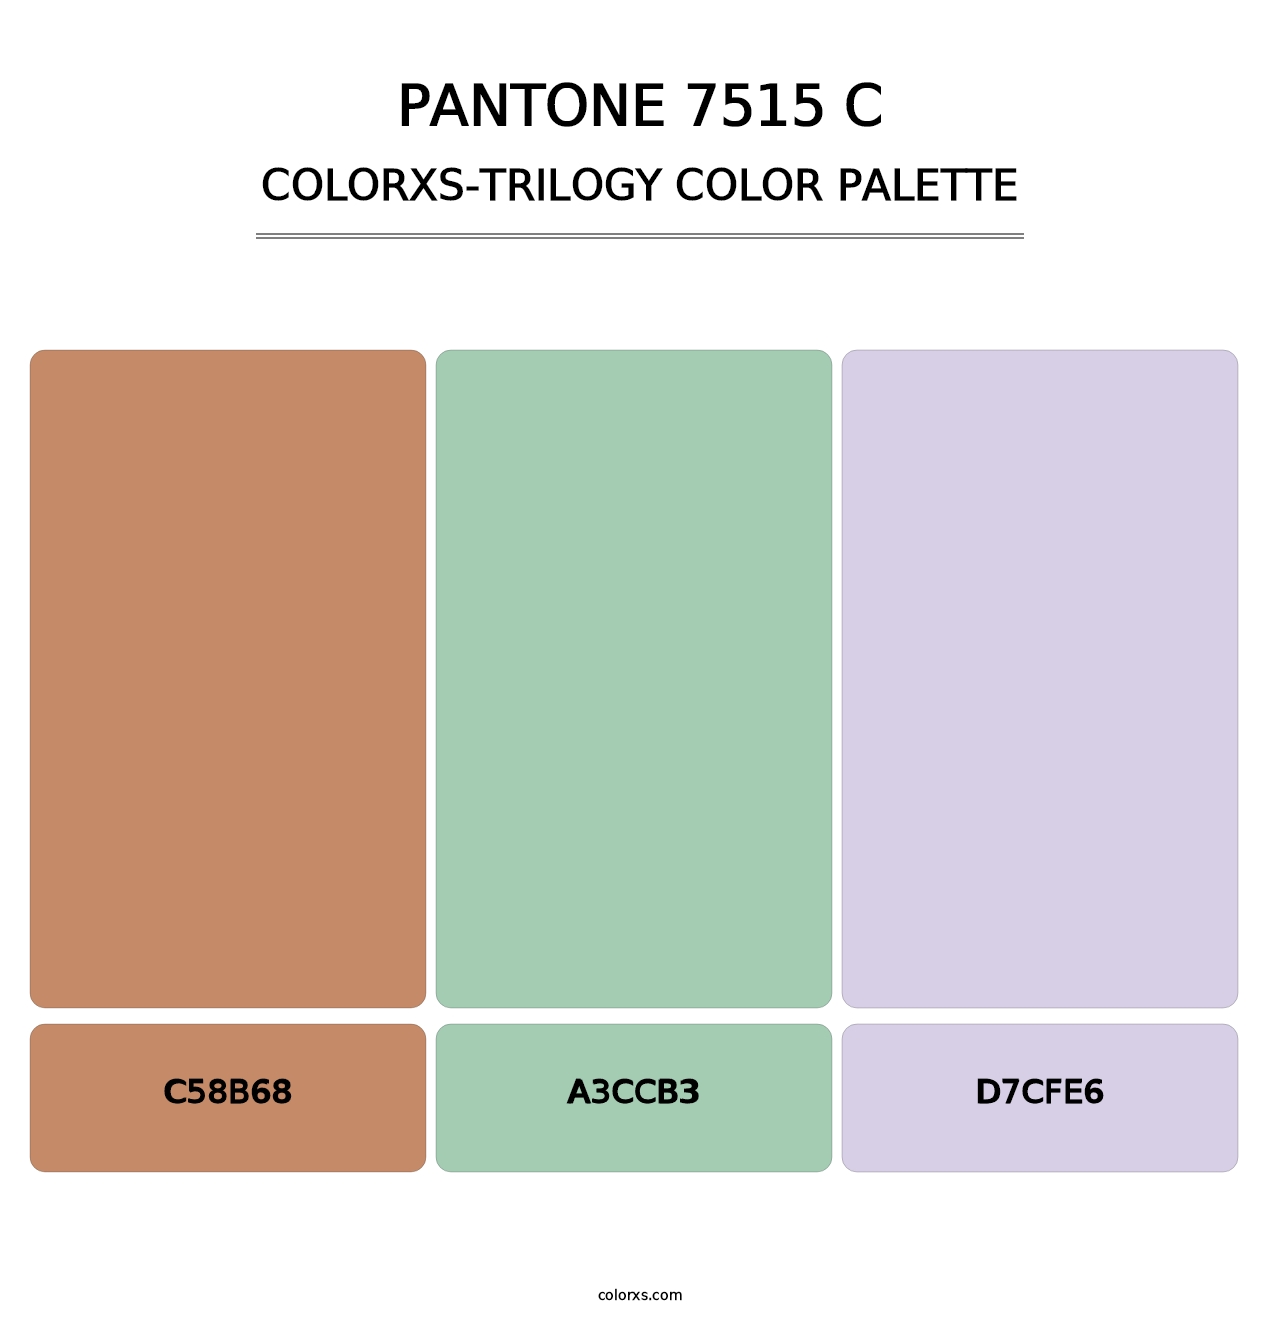 PANTONE 7515 C - Colorxs Trilogy Palette